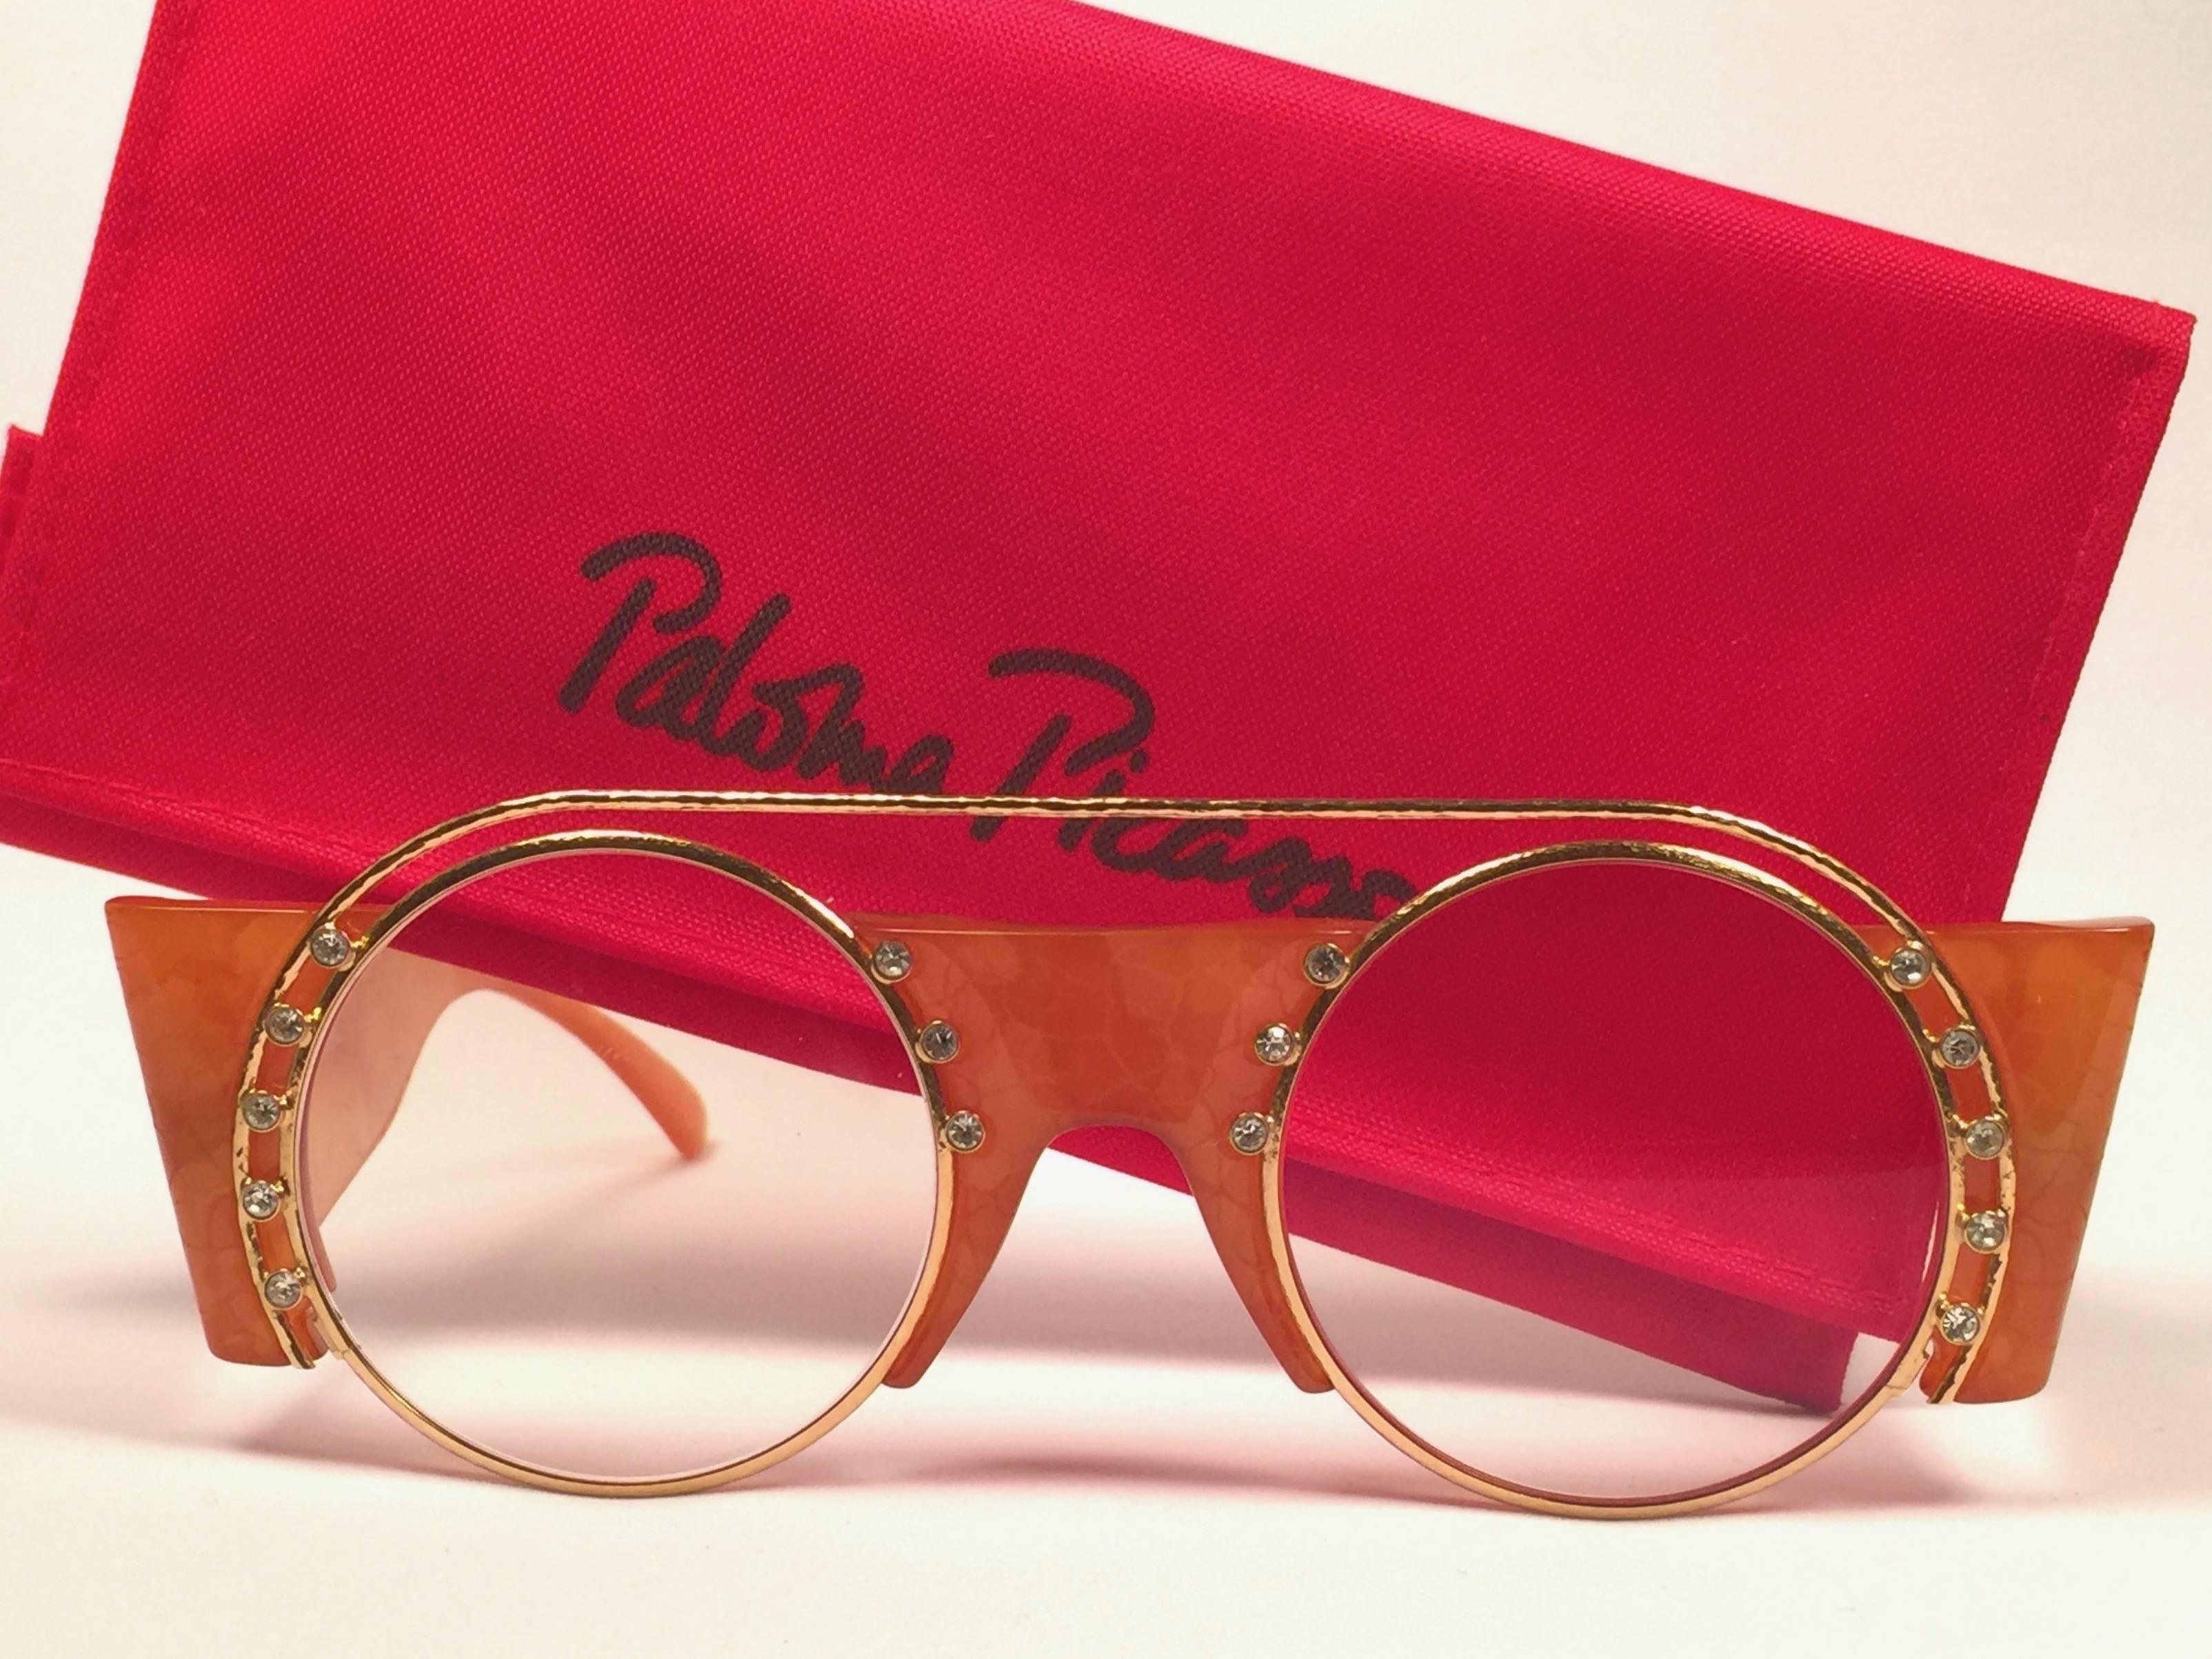 Mint Vintage Paloma Picasso Gold & Honig Frame mit Strass Details Sonnenbrille.

Hergestellt in Deutschland in den 1980er Jahren. 

Rahmen mit leichten lagerungsbedingten Gebrauchsspuren und Anlaufen. 

Hergestellt in Deutschland.
